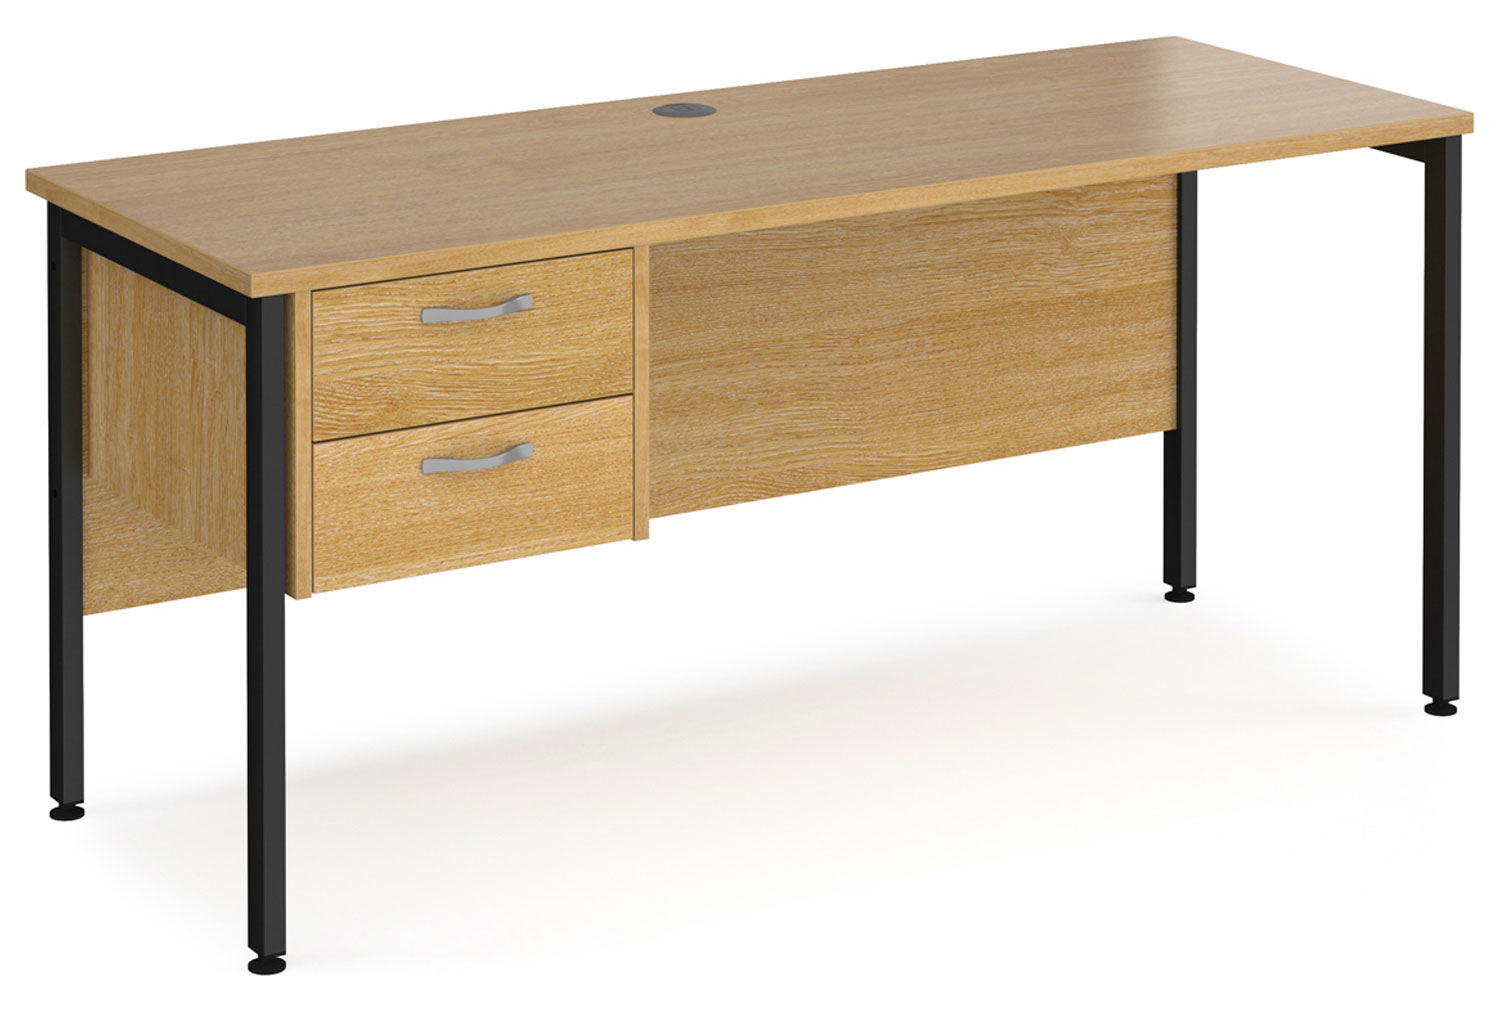 Value Line Deluxe H-Leg Narrow Rectangular Office Desk 2 Drawers (Black Legs), 160wx60dx73h (cm), Oak